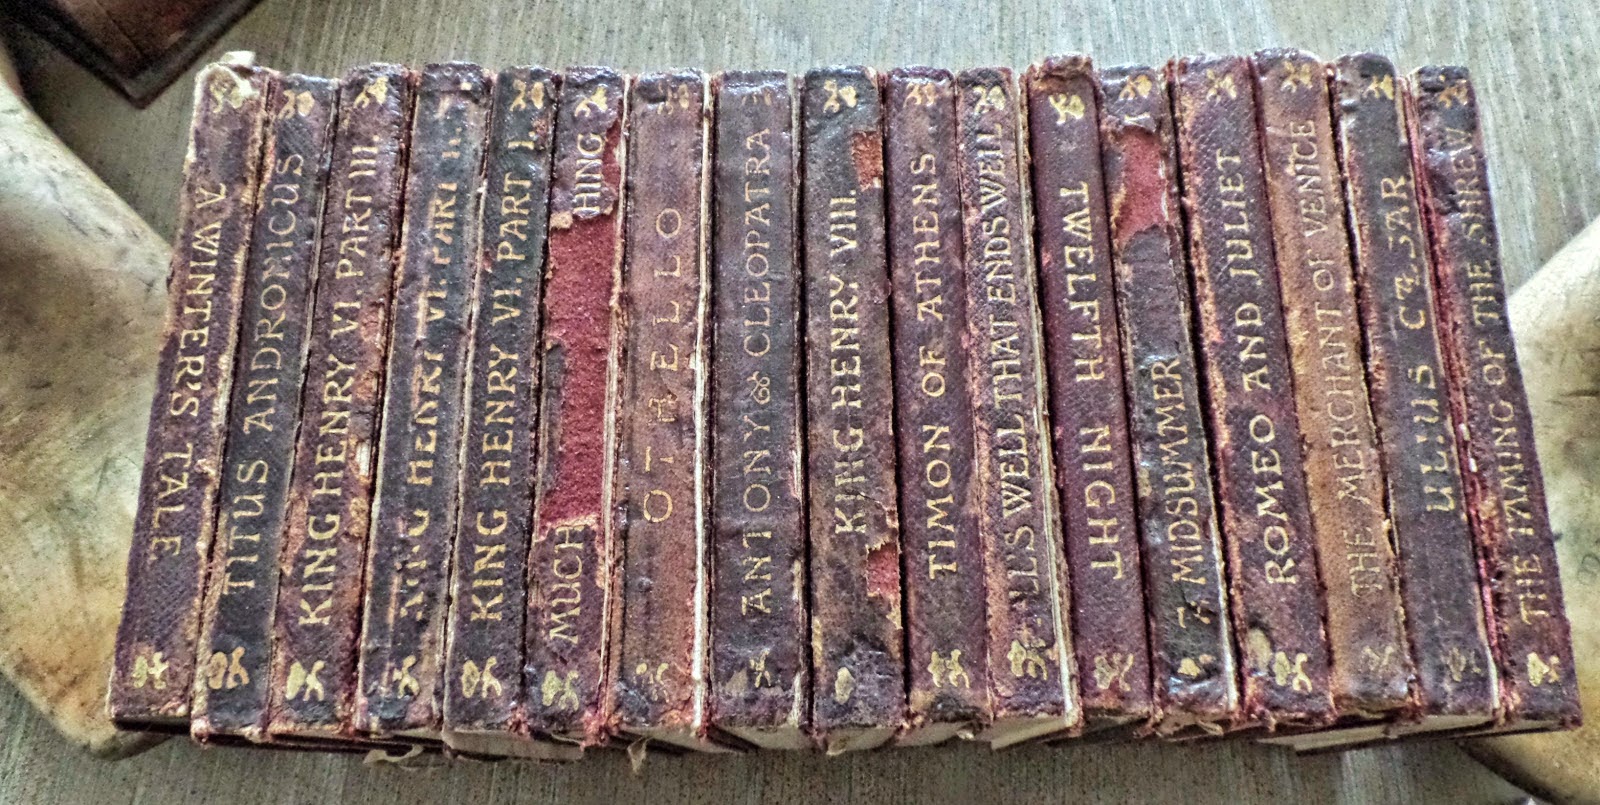 antique books